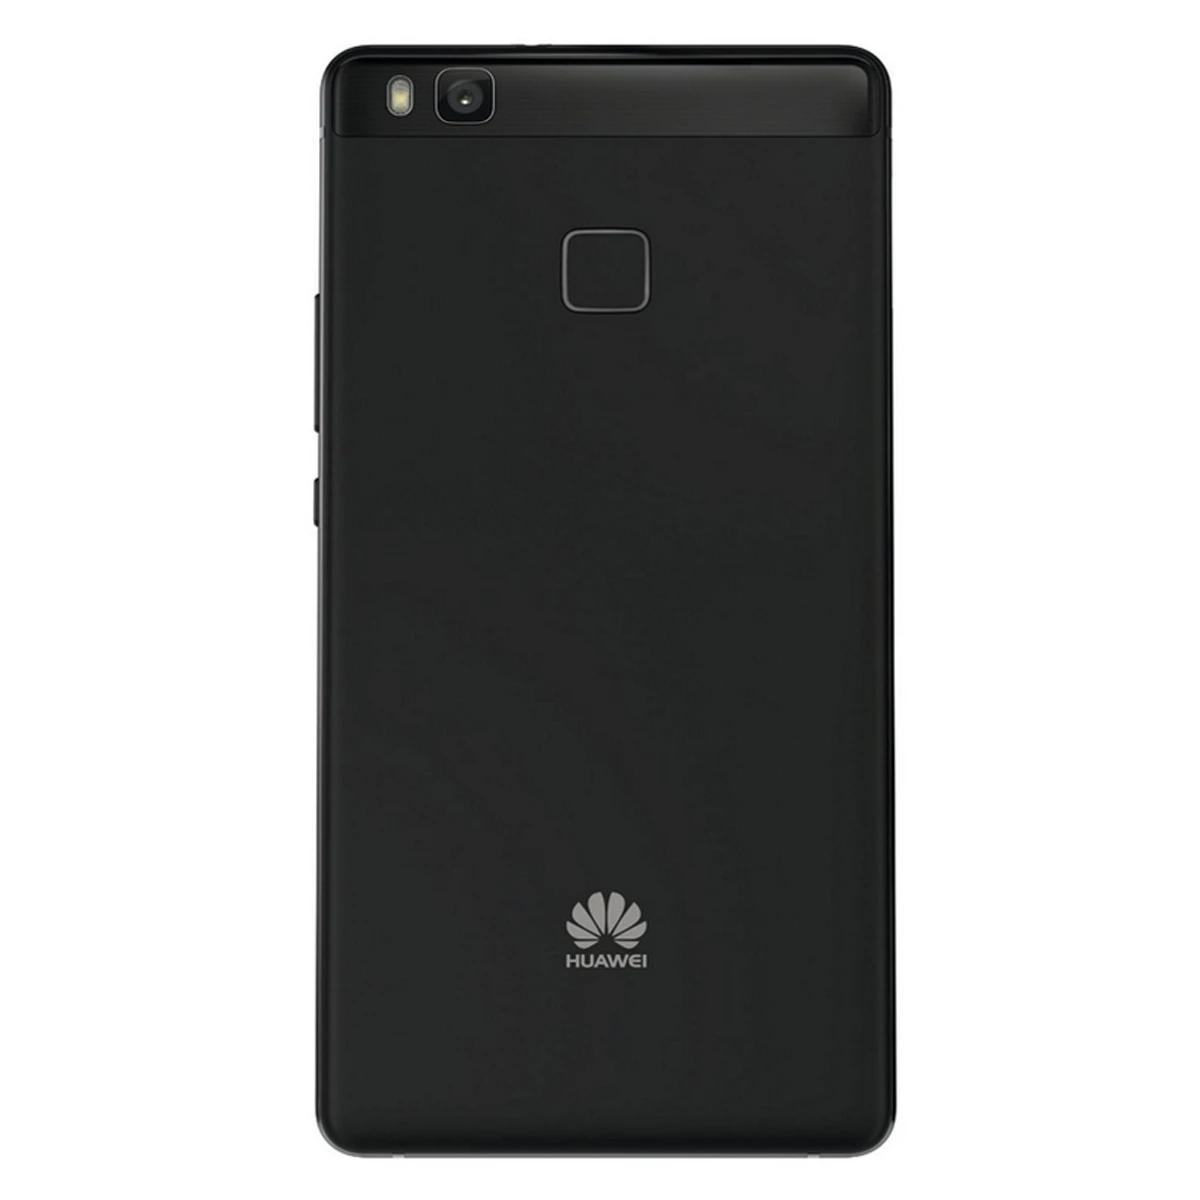 Huawei P9 Lite Mini Dual SIM 16 жесткий ГБ Цветной черный смартфон